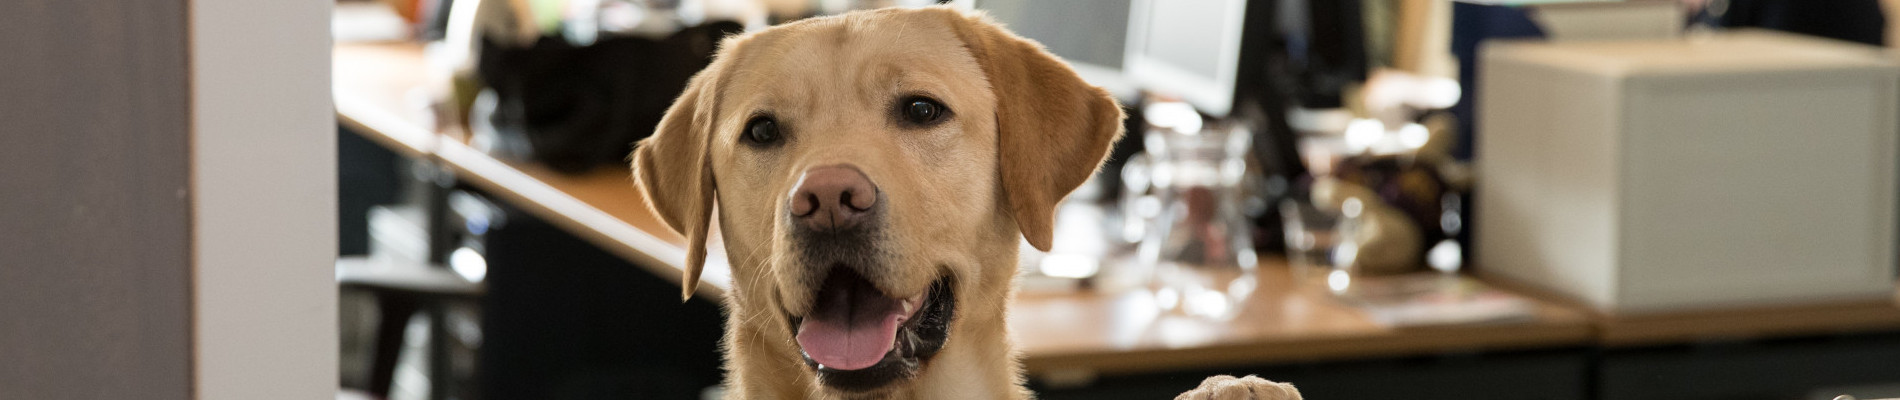 blonde hond kijkt over het randje van een kantoor heen